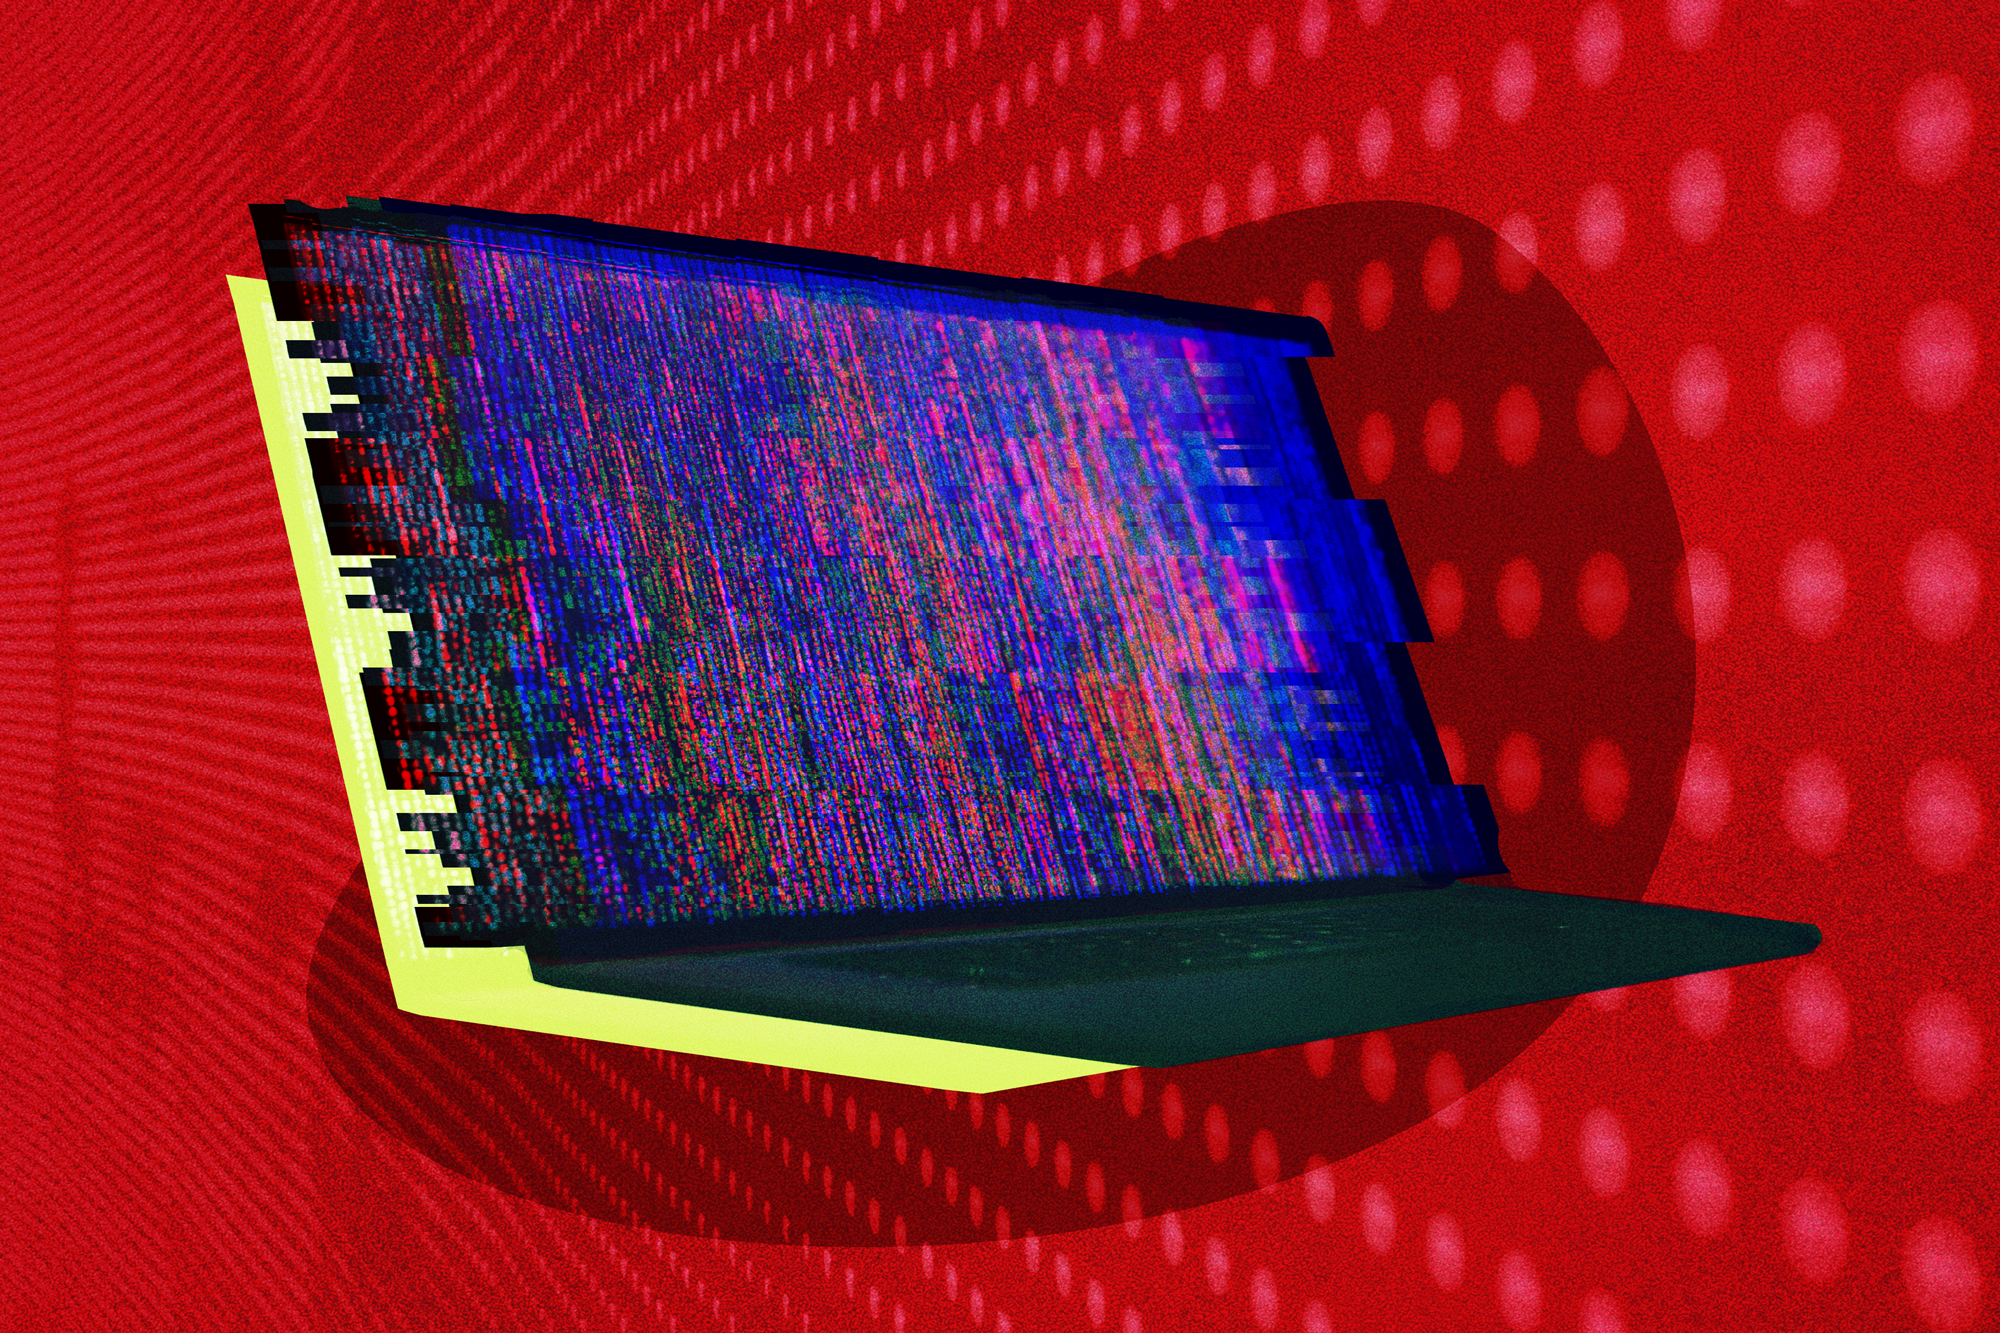 Una representación digital de una computadora portátil siendo pirateada por un hacker.